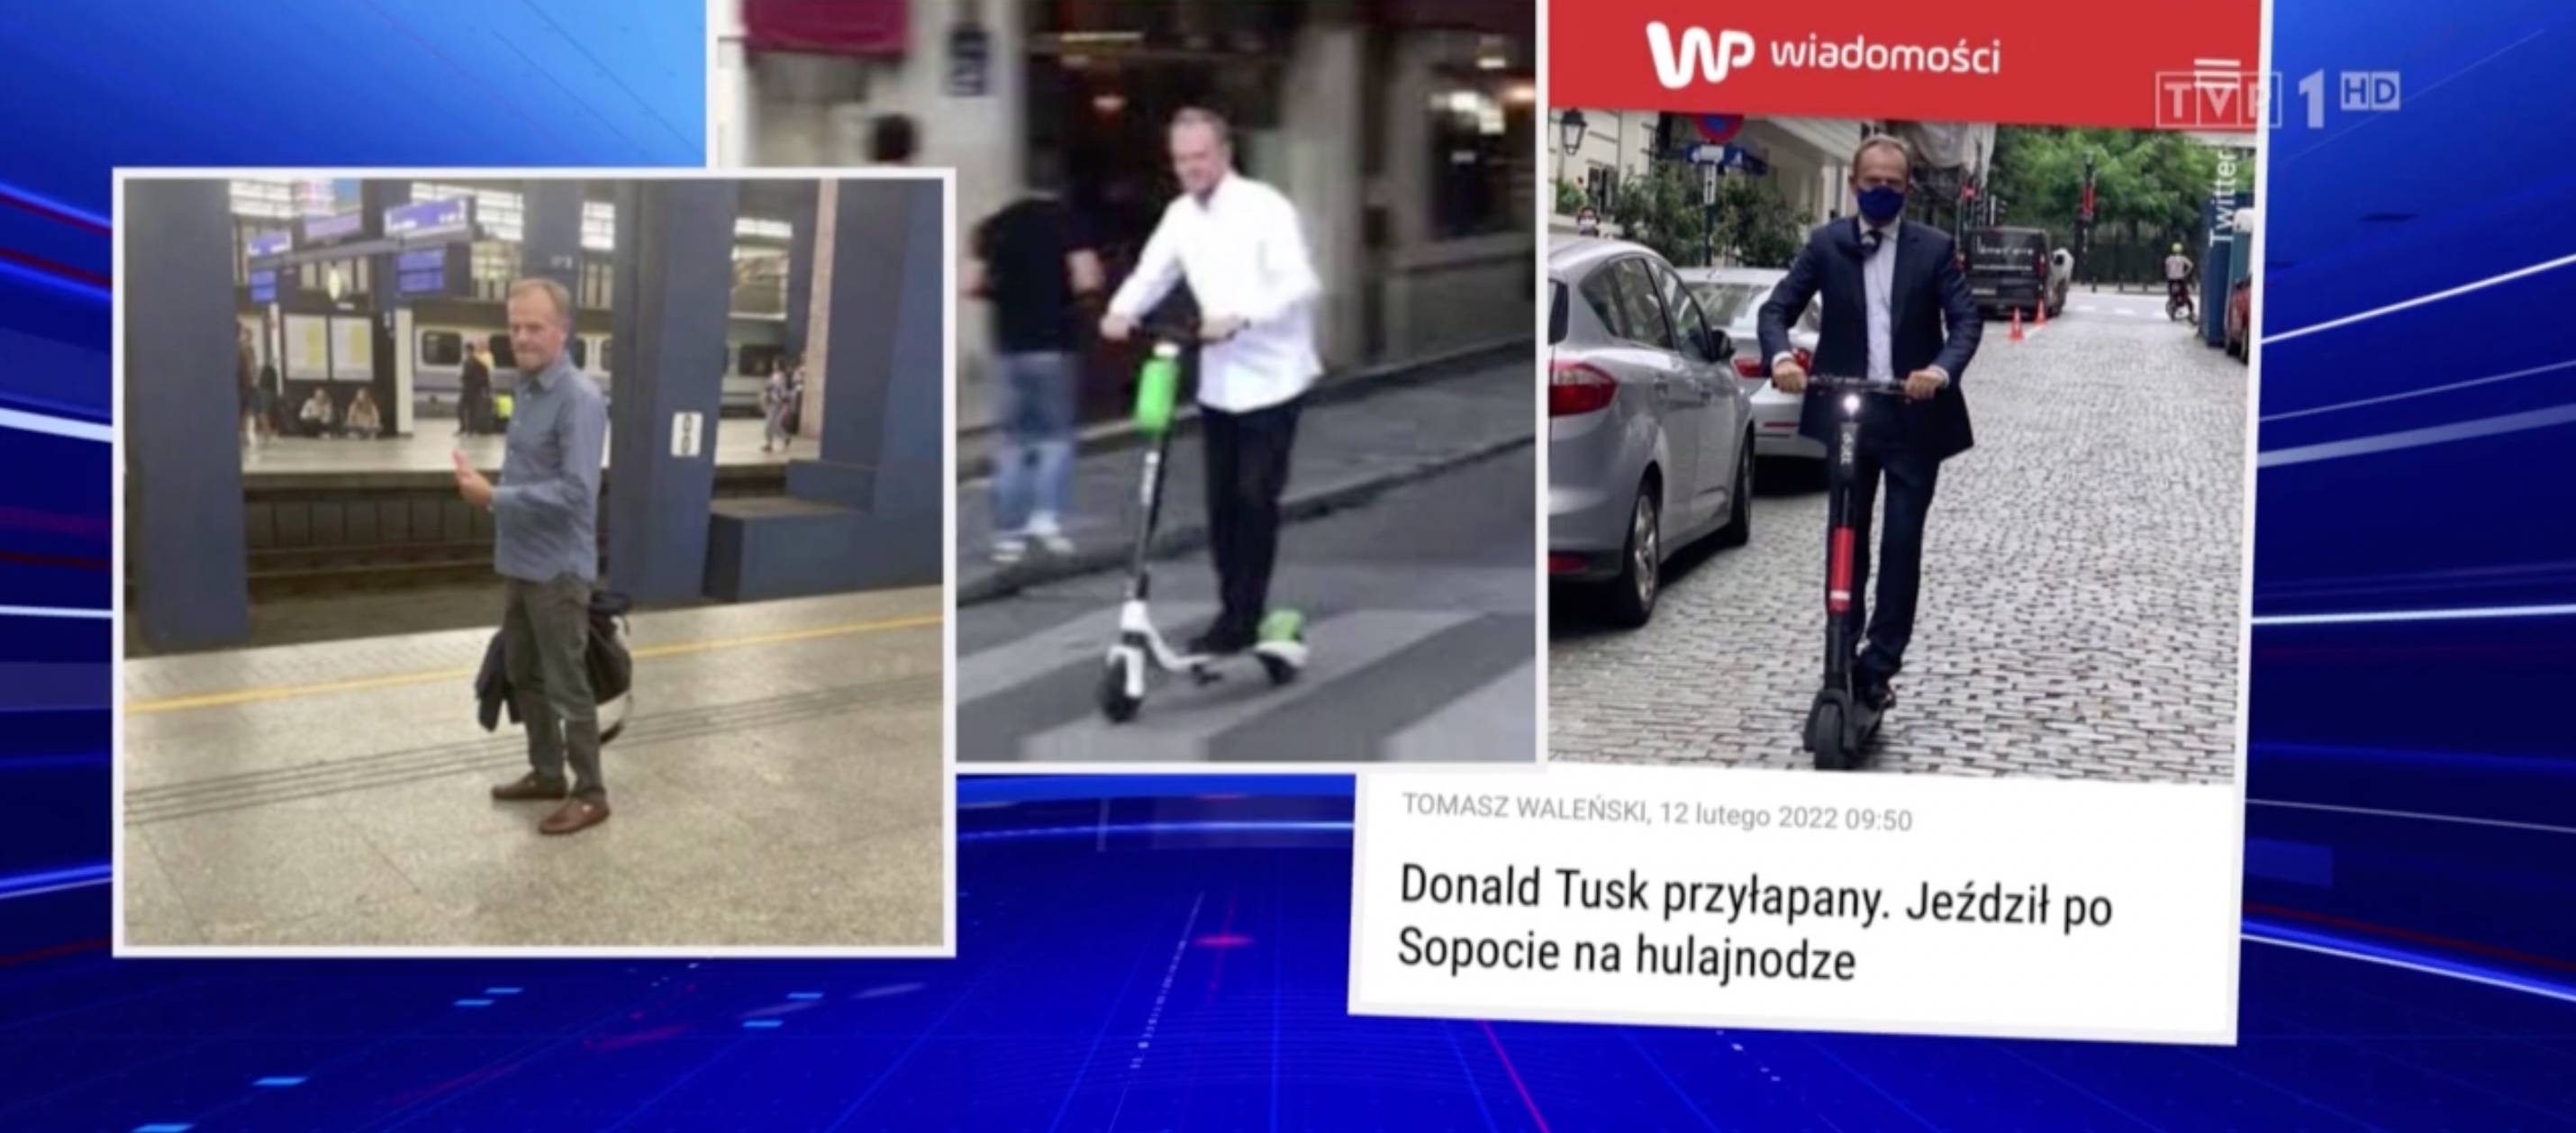 Wiadomości TVP, 3 sierpnia 2022, Donald Tusk na hulajnodze